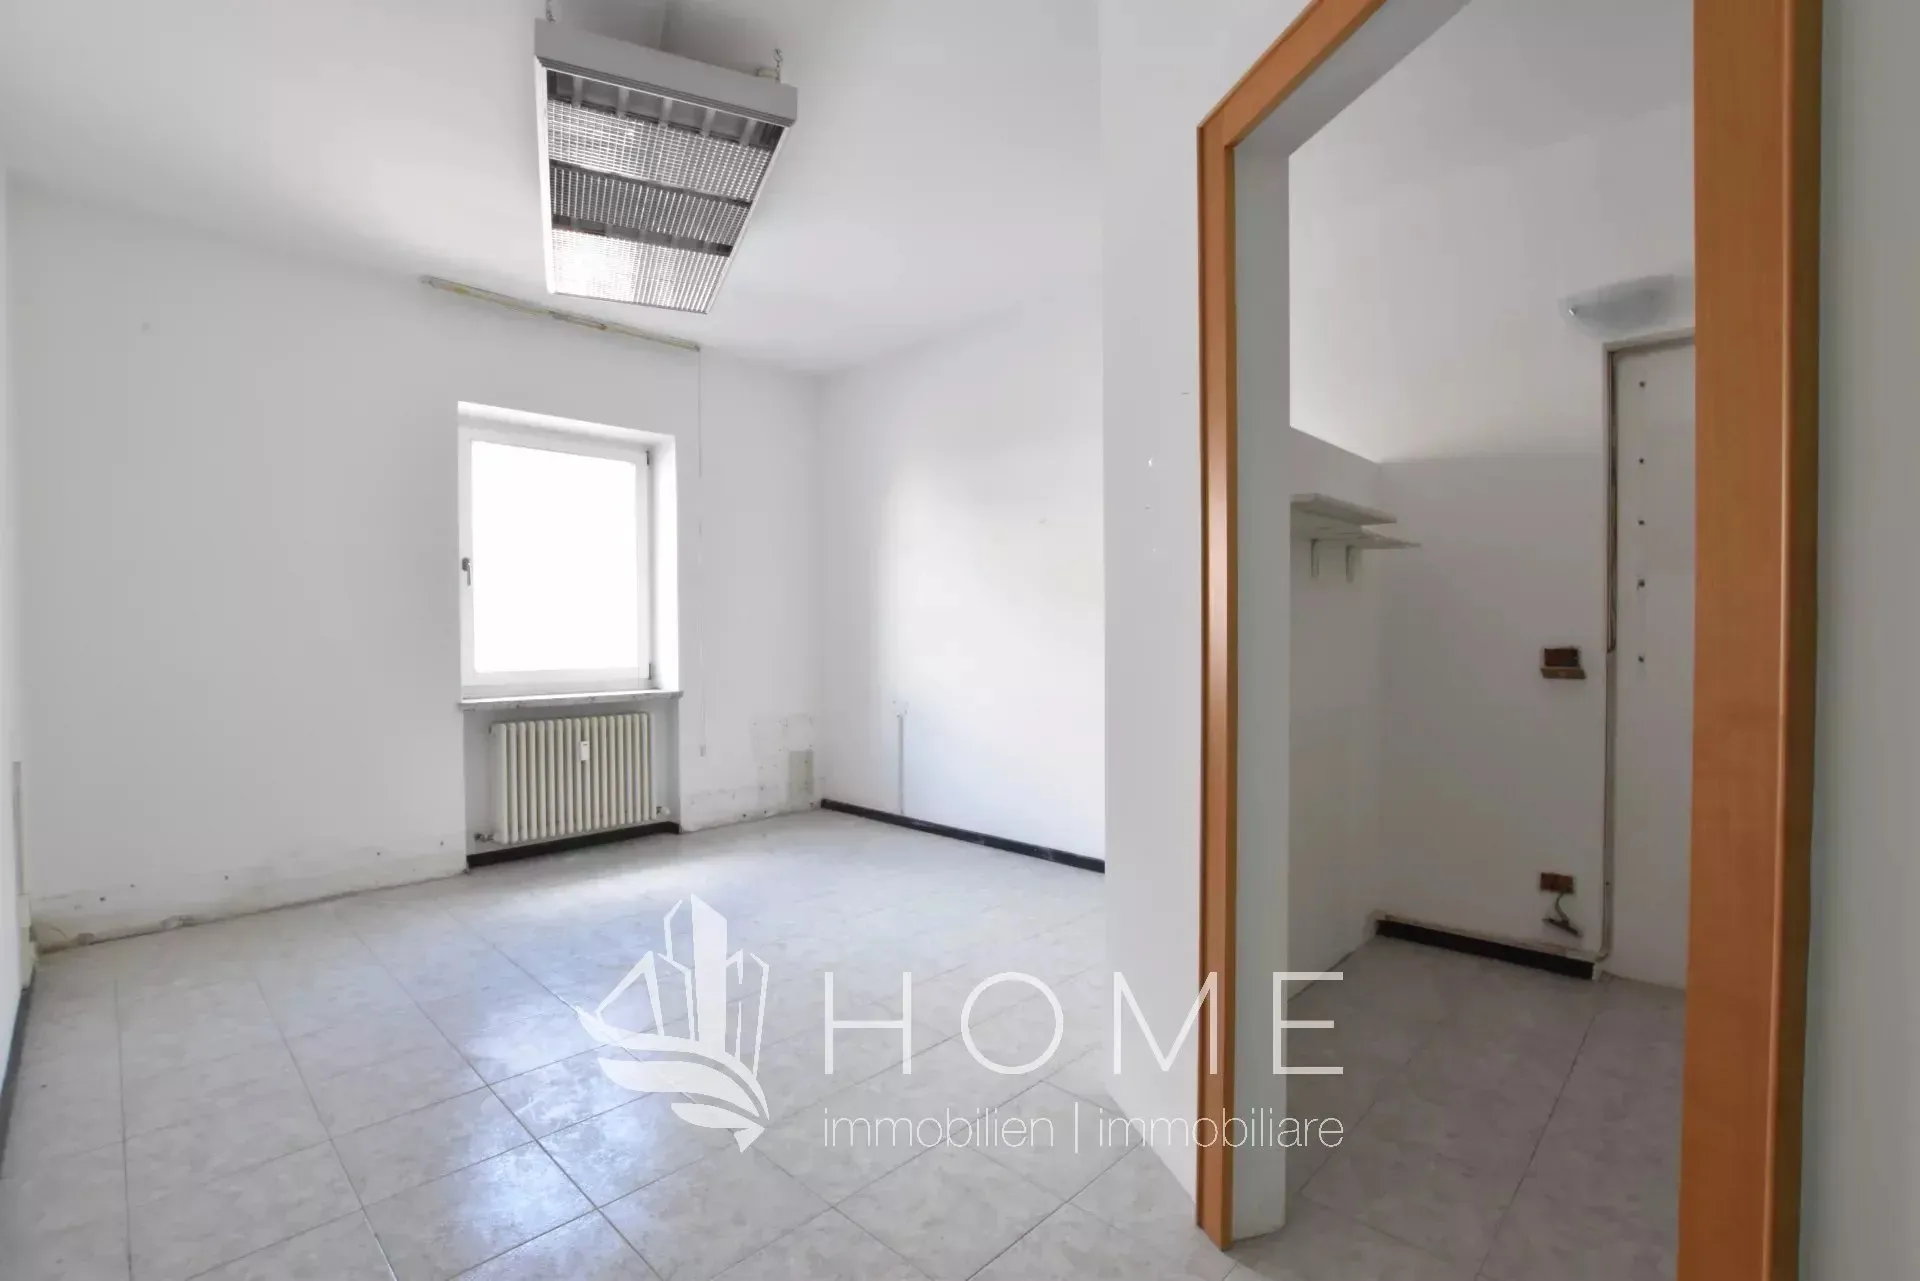 Immagine per Appartamento in vendita a Egna via Largo Cappuccini